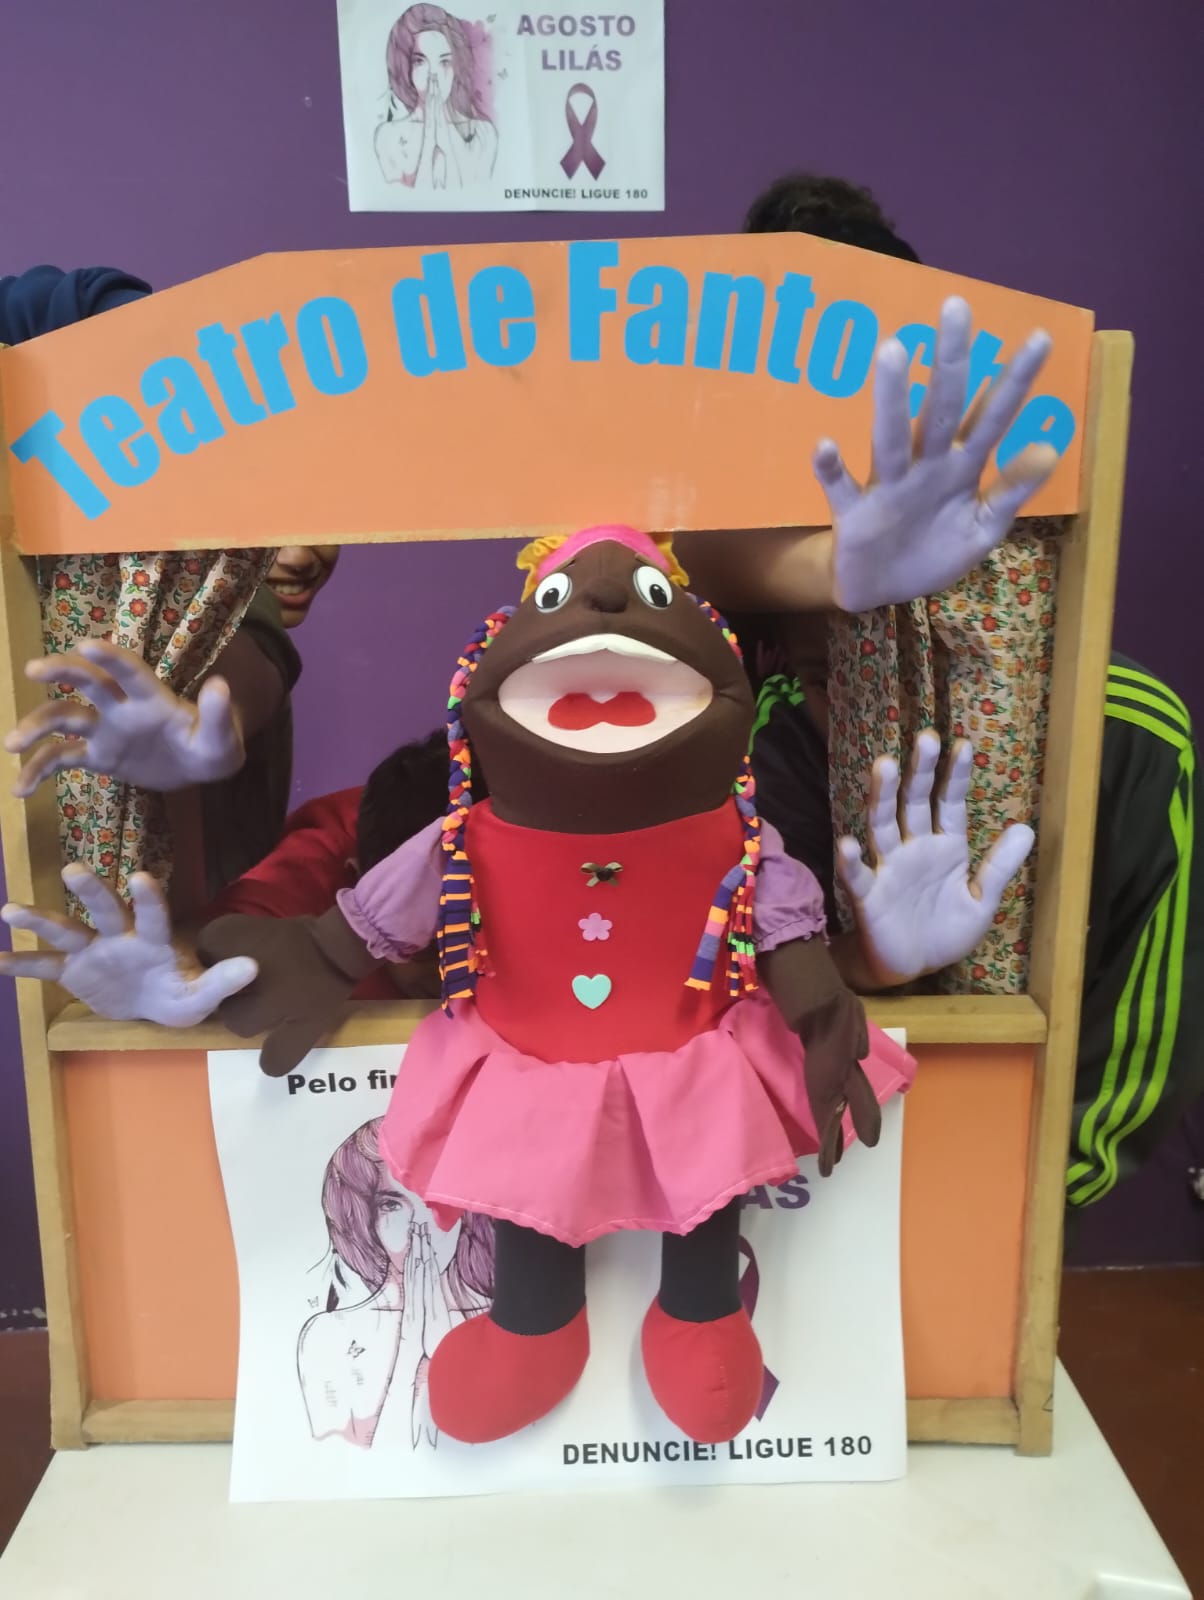 Na imagem, um teatro de fantoches montado, com um boneco na frente, e ao lado, diversas mãos de crianças pintadas de roxo